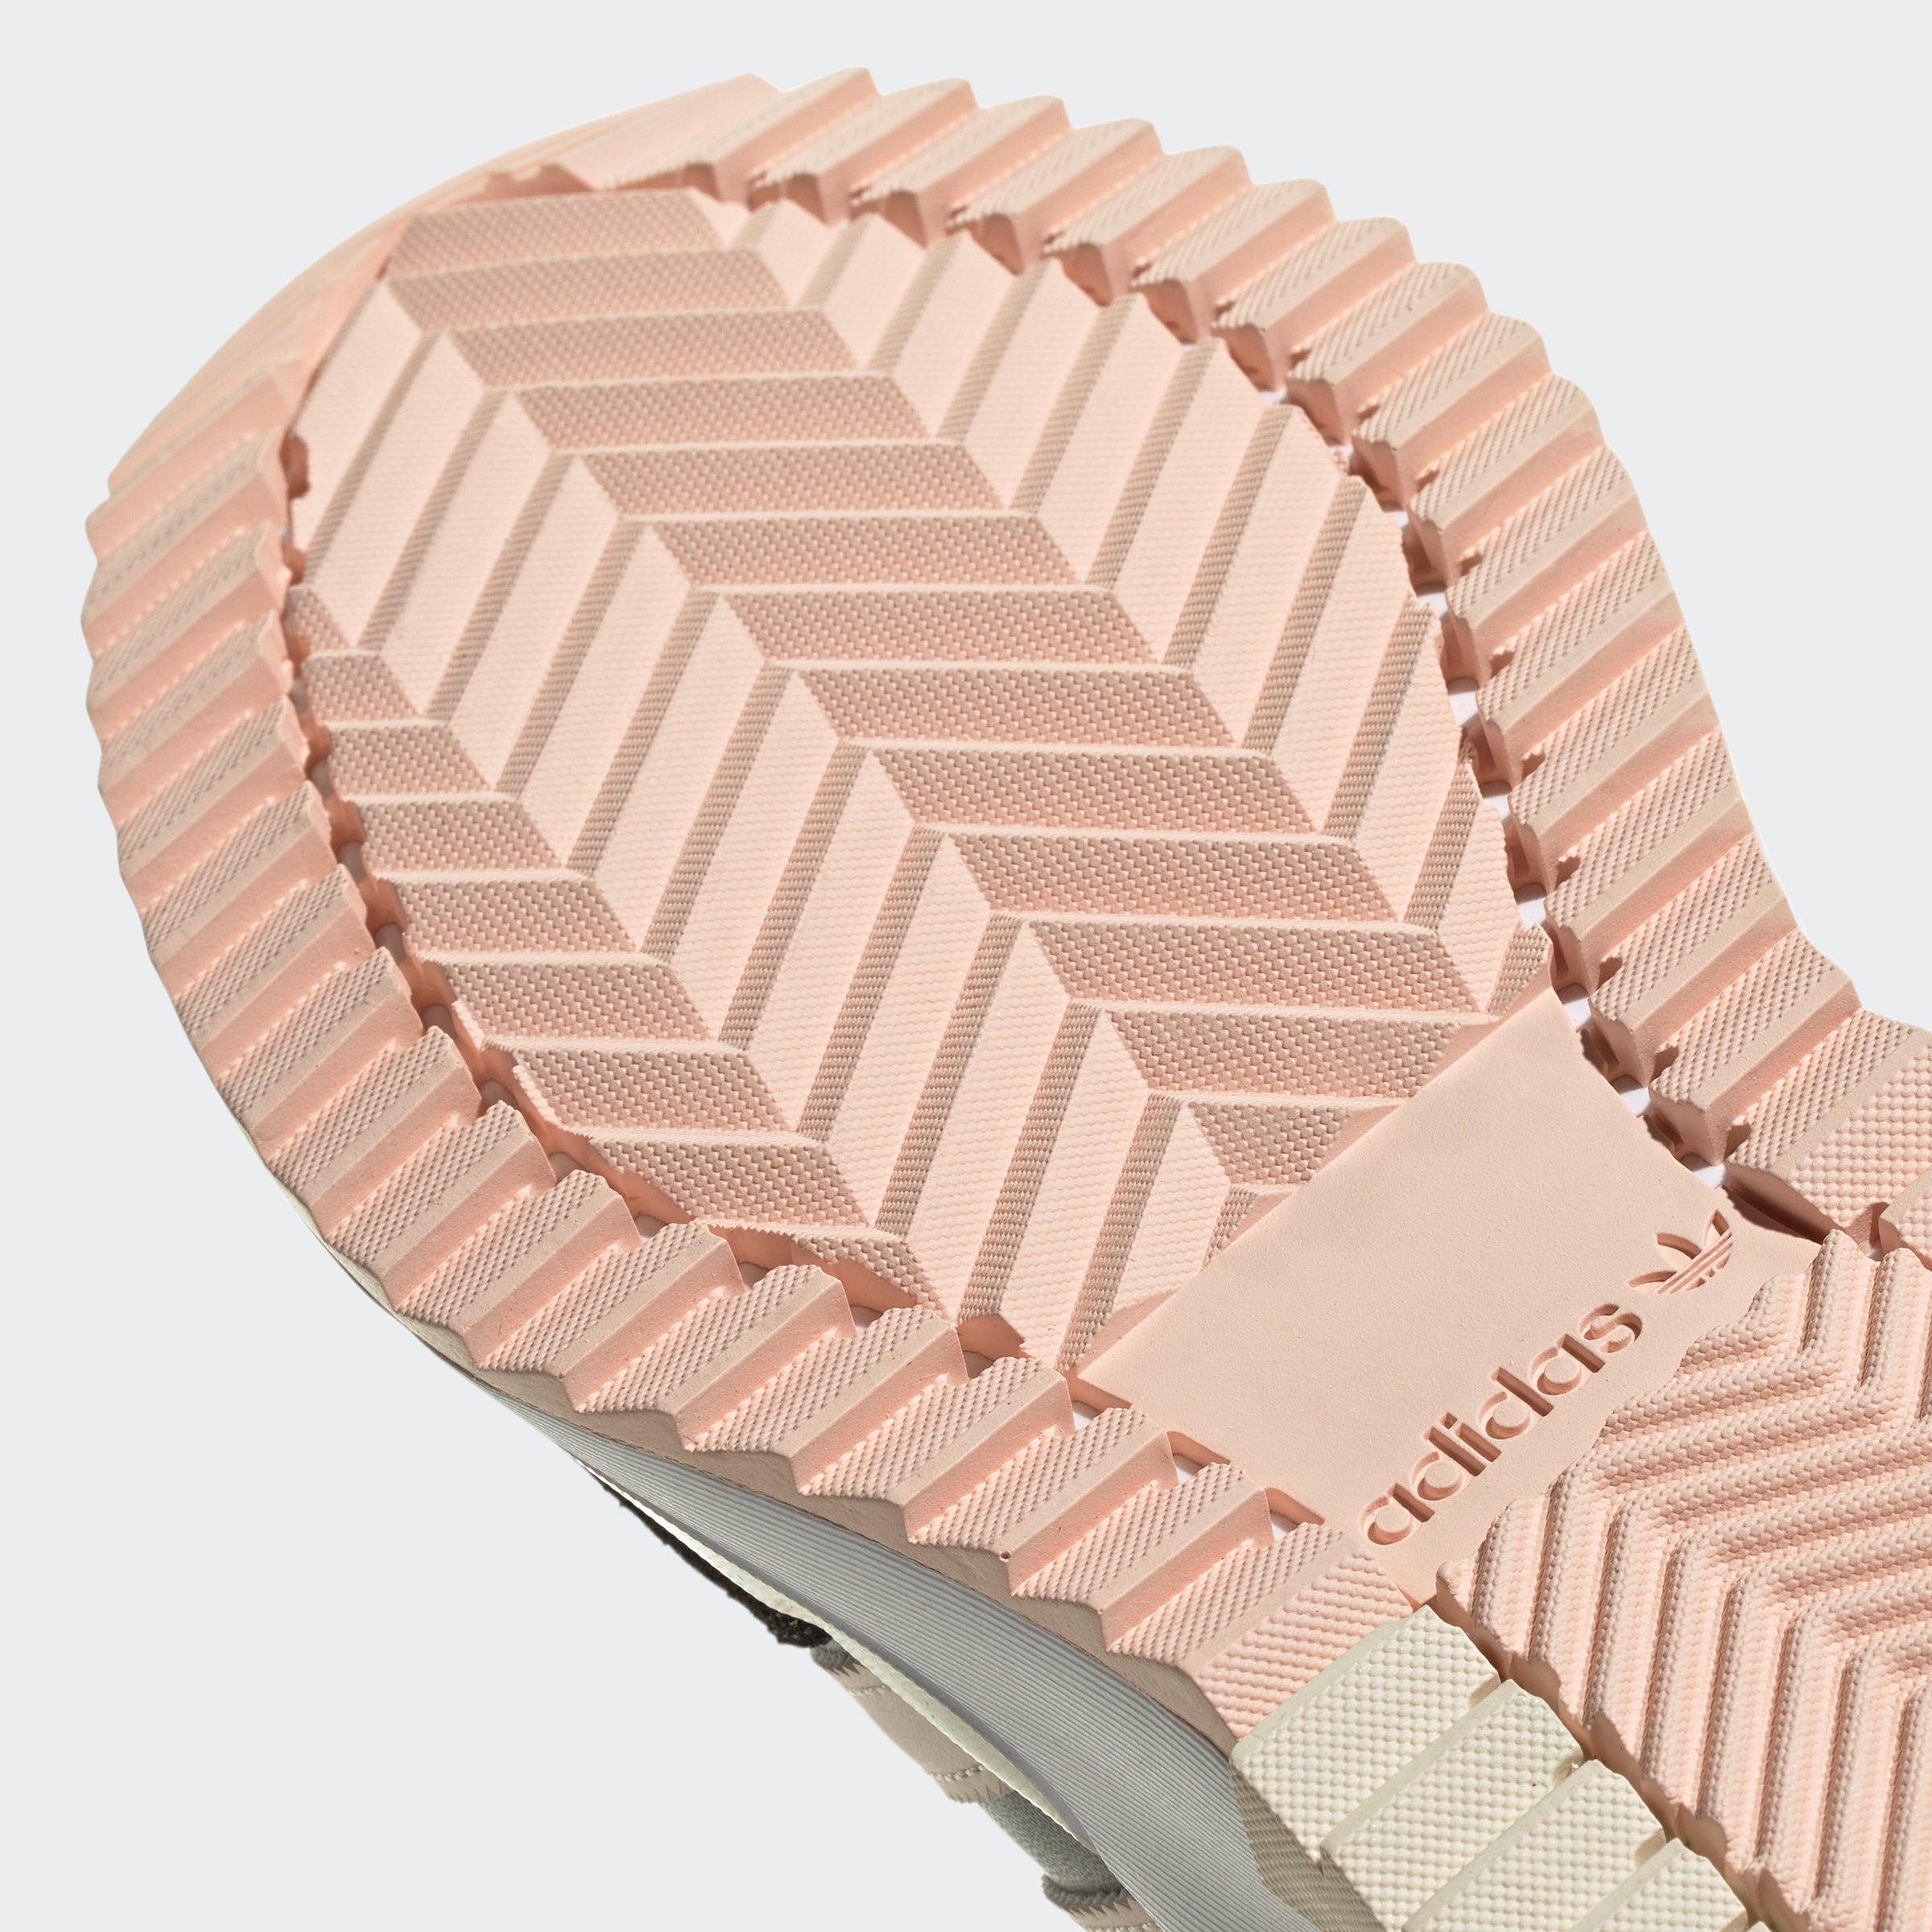 adidas Originals RETROPY Five F2 / Sneaker / Grey Wonder Quartz Carbon